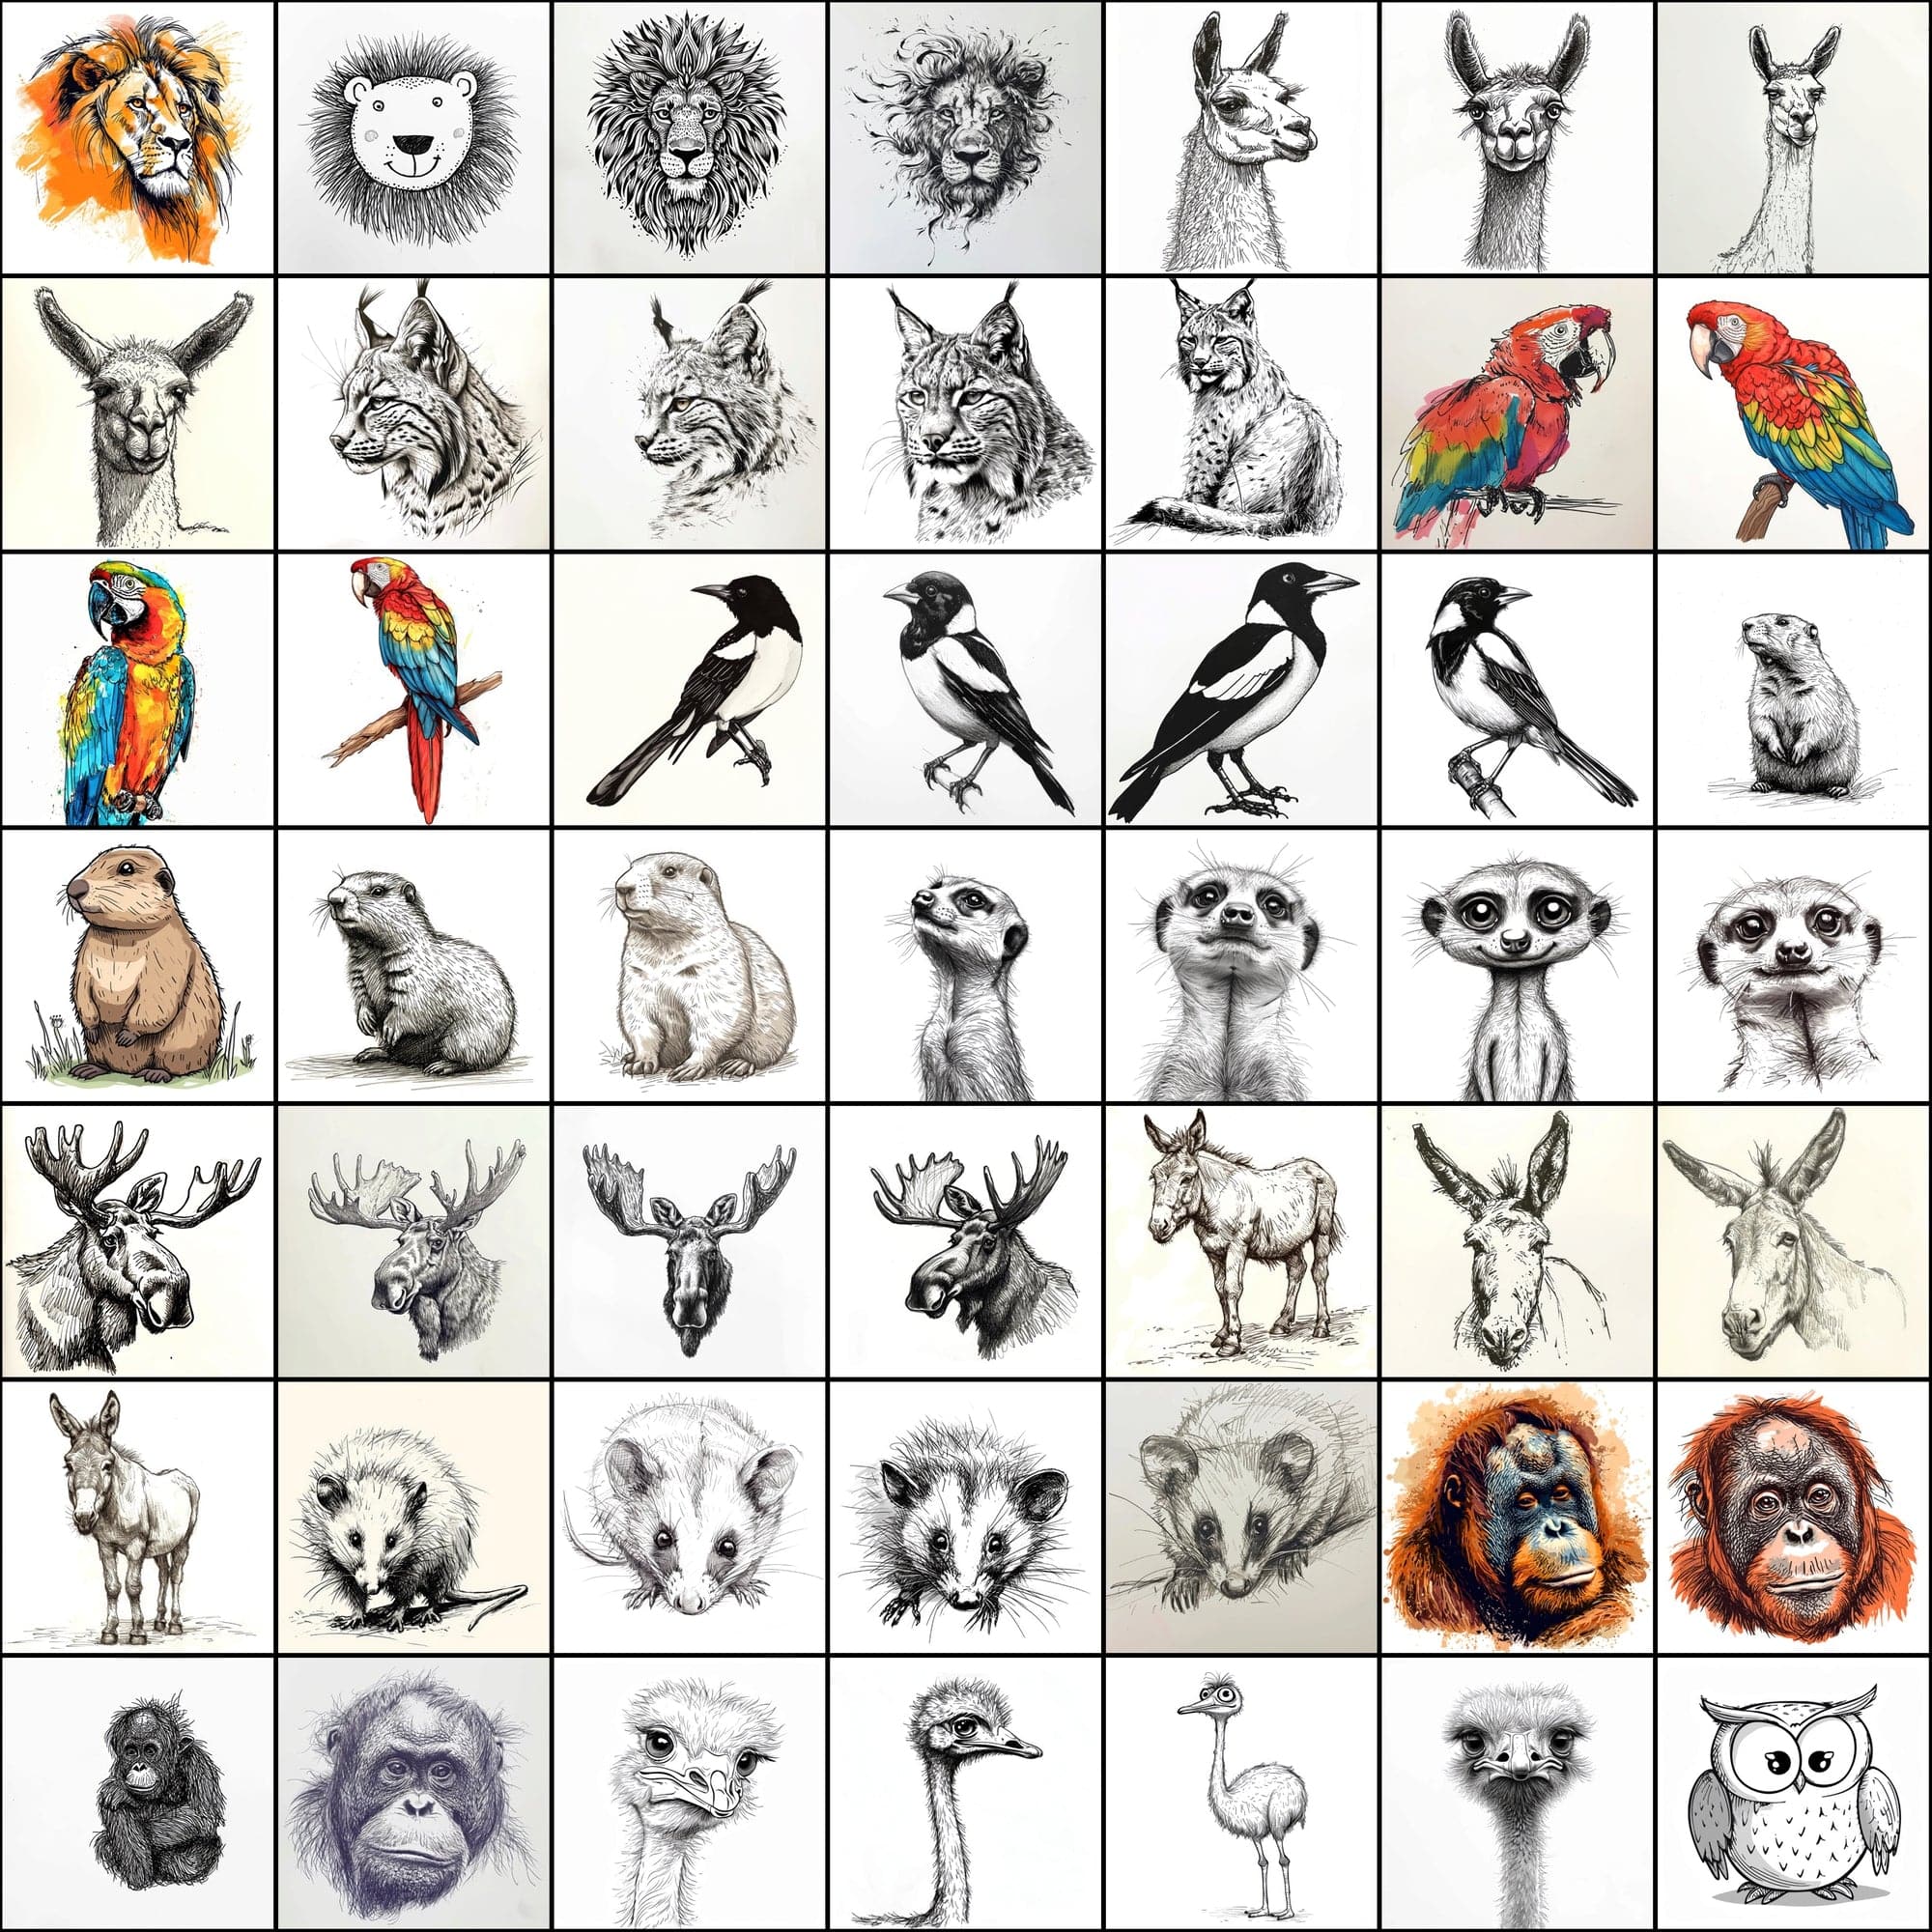 500 Doodle Animal Images, Black and White Digital Art Digital Download Sumobundle